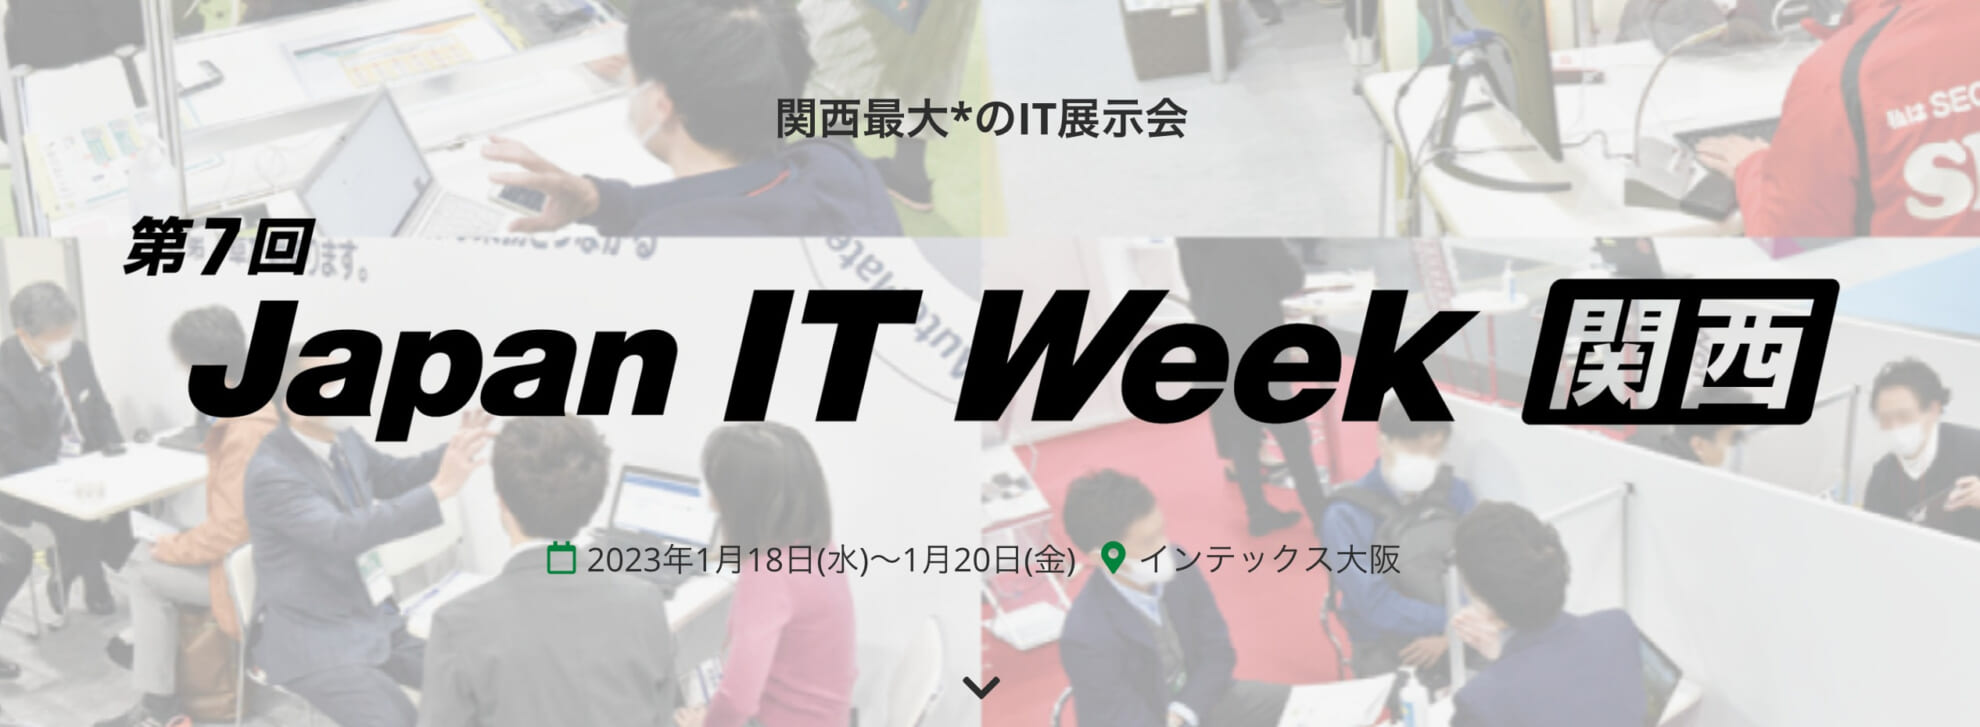 Japan IT Week関西2023